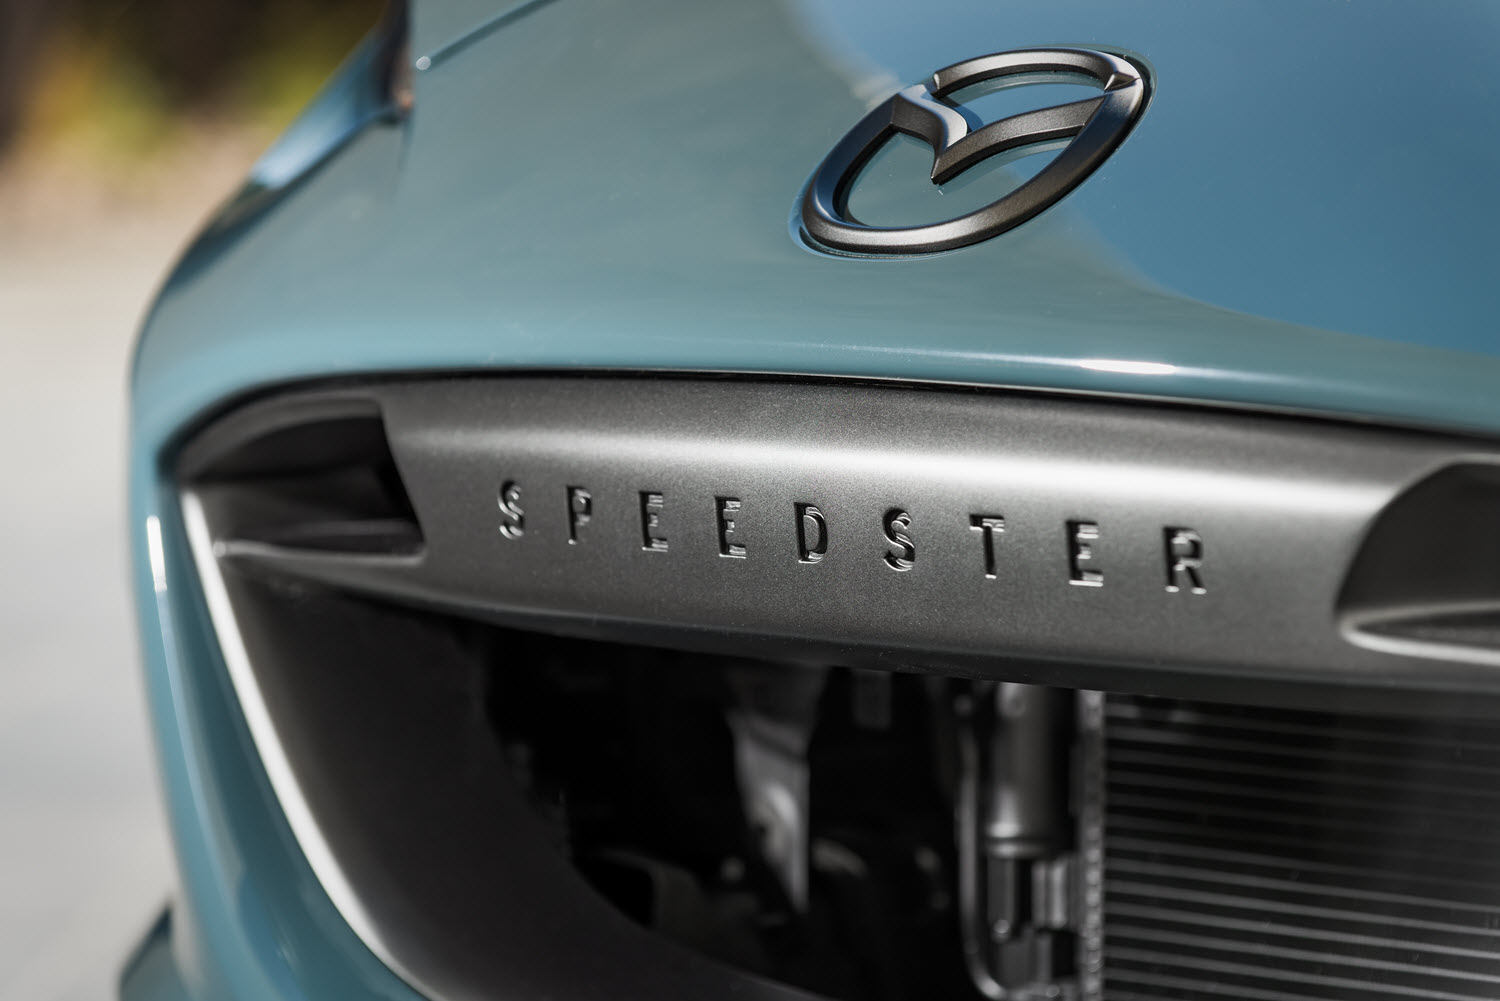 2015 Mazda MX 5 Speedster Concept